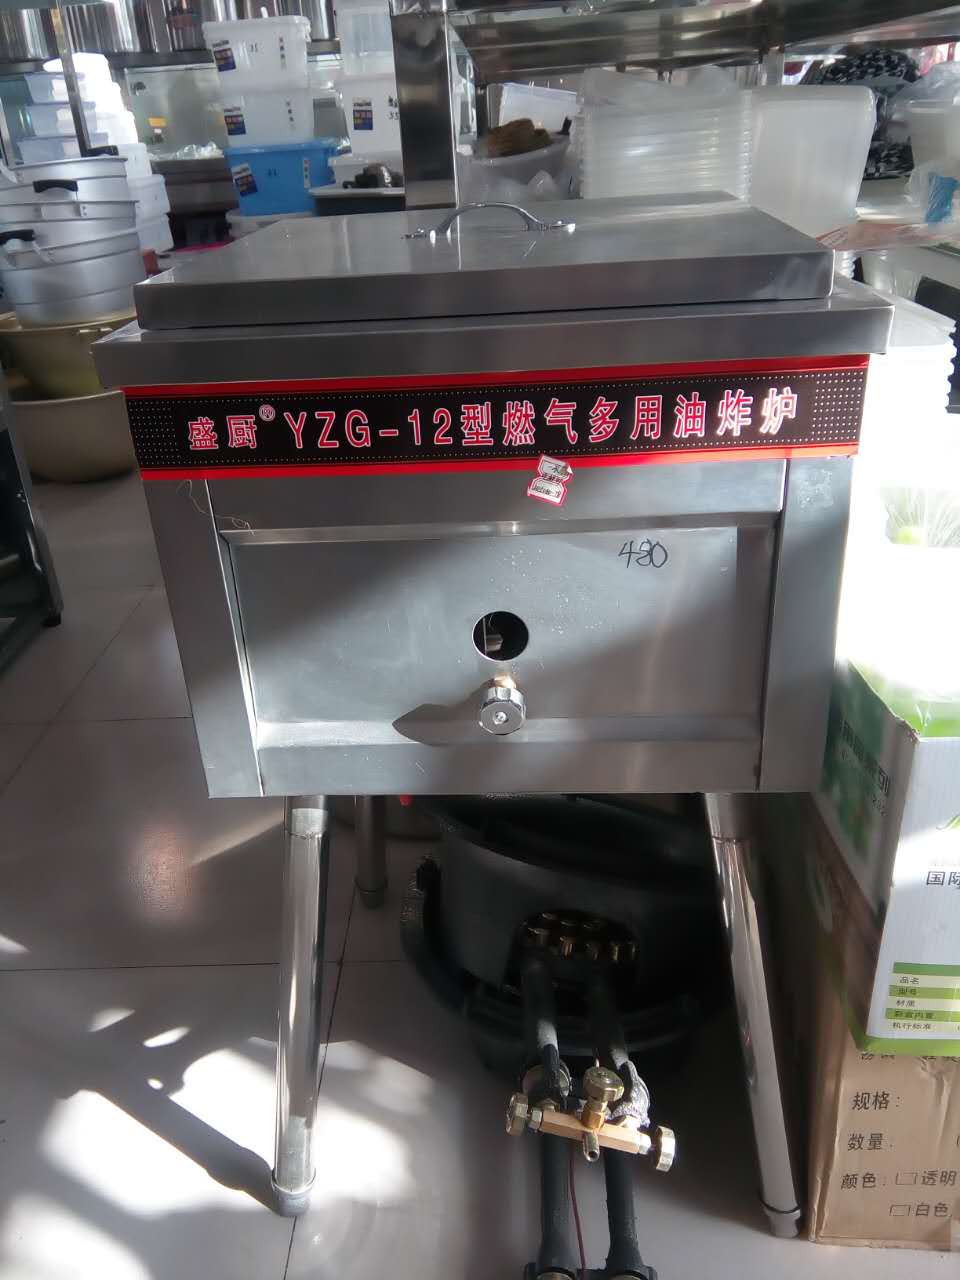 鑫宏源直销加工定做油炸锅自助餐设备YZG-12流动燃气油炸炉